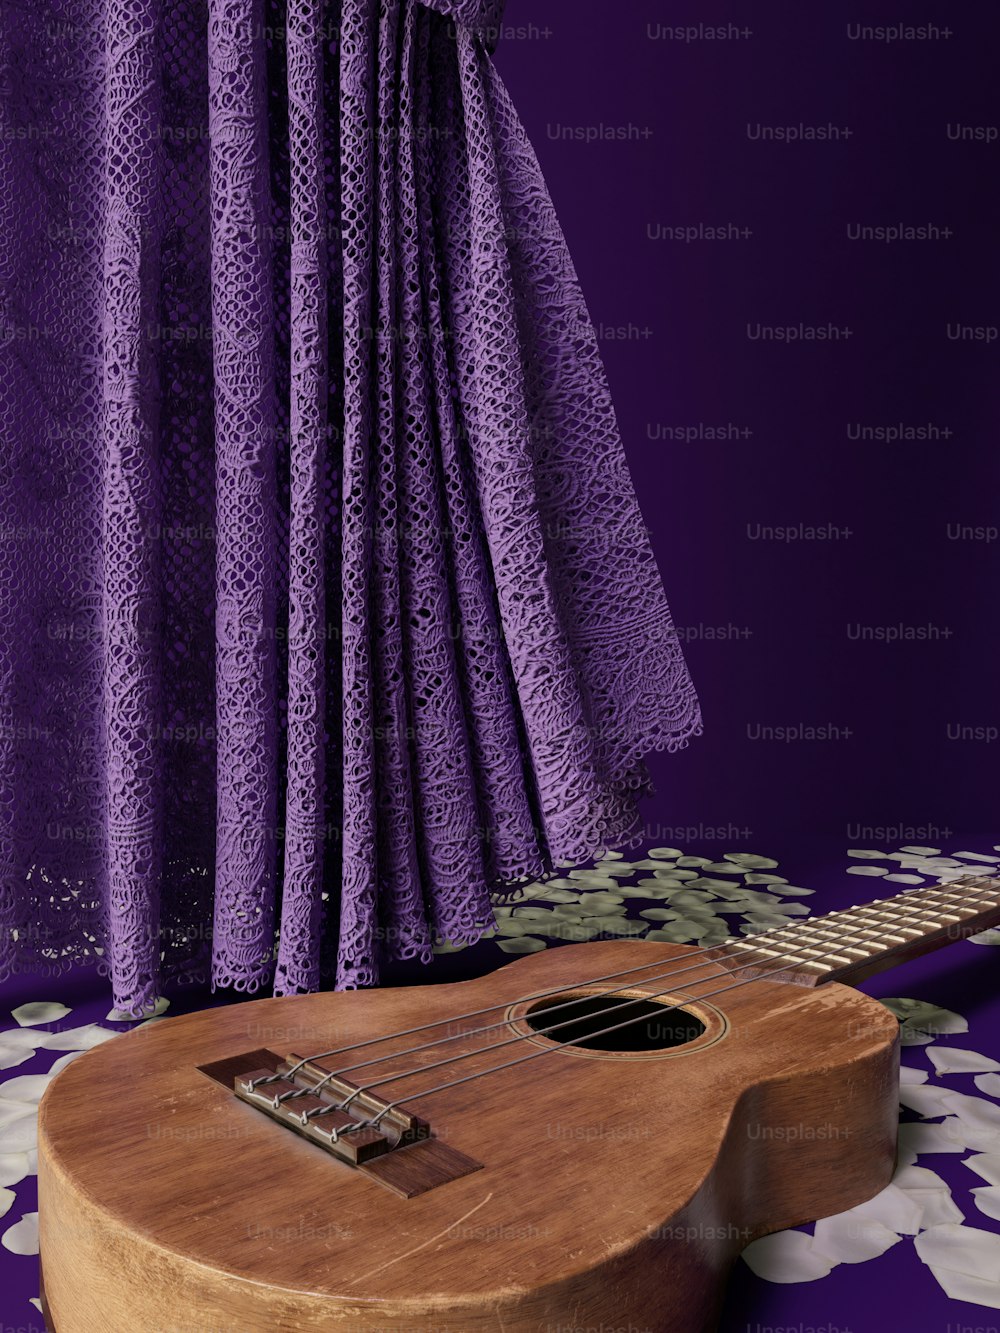 Un ukulele si trova di fronte a una tenda viola